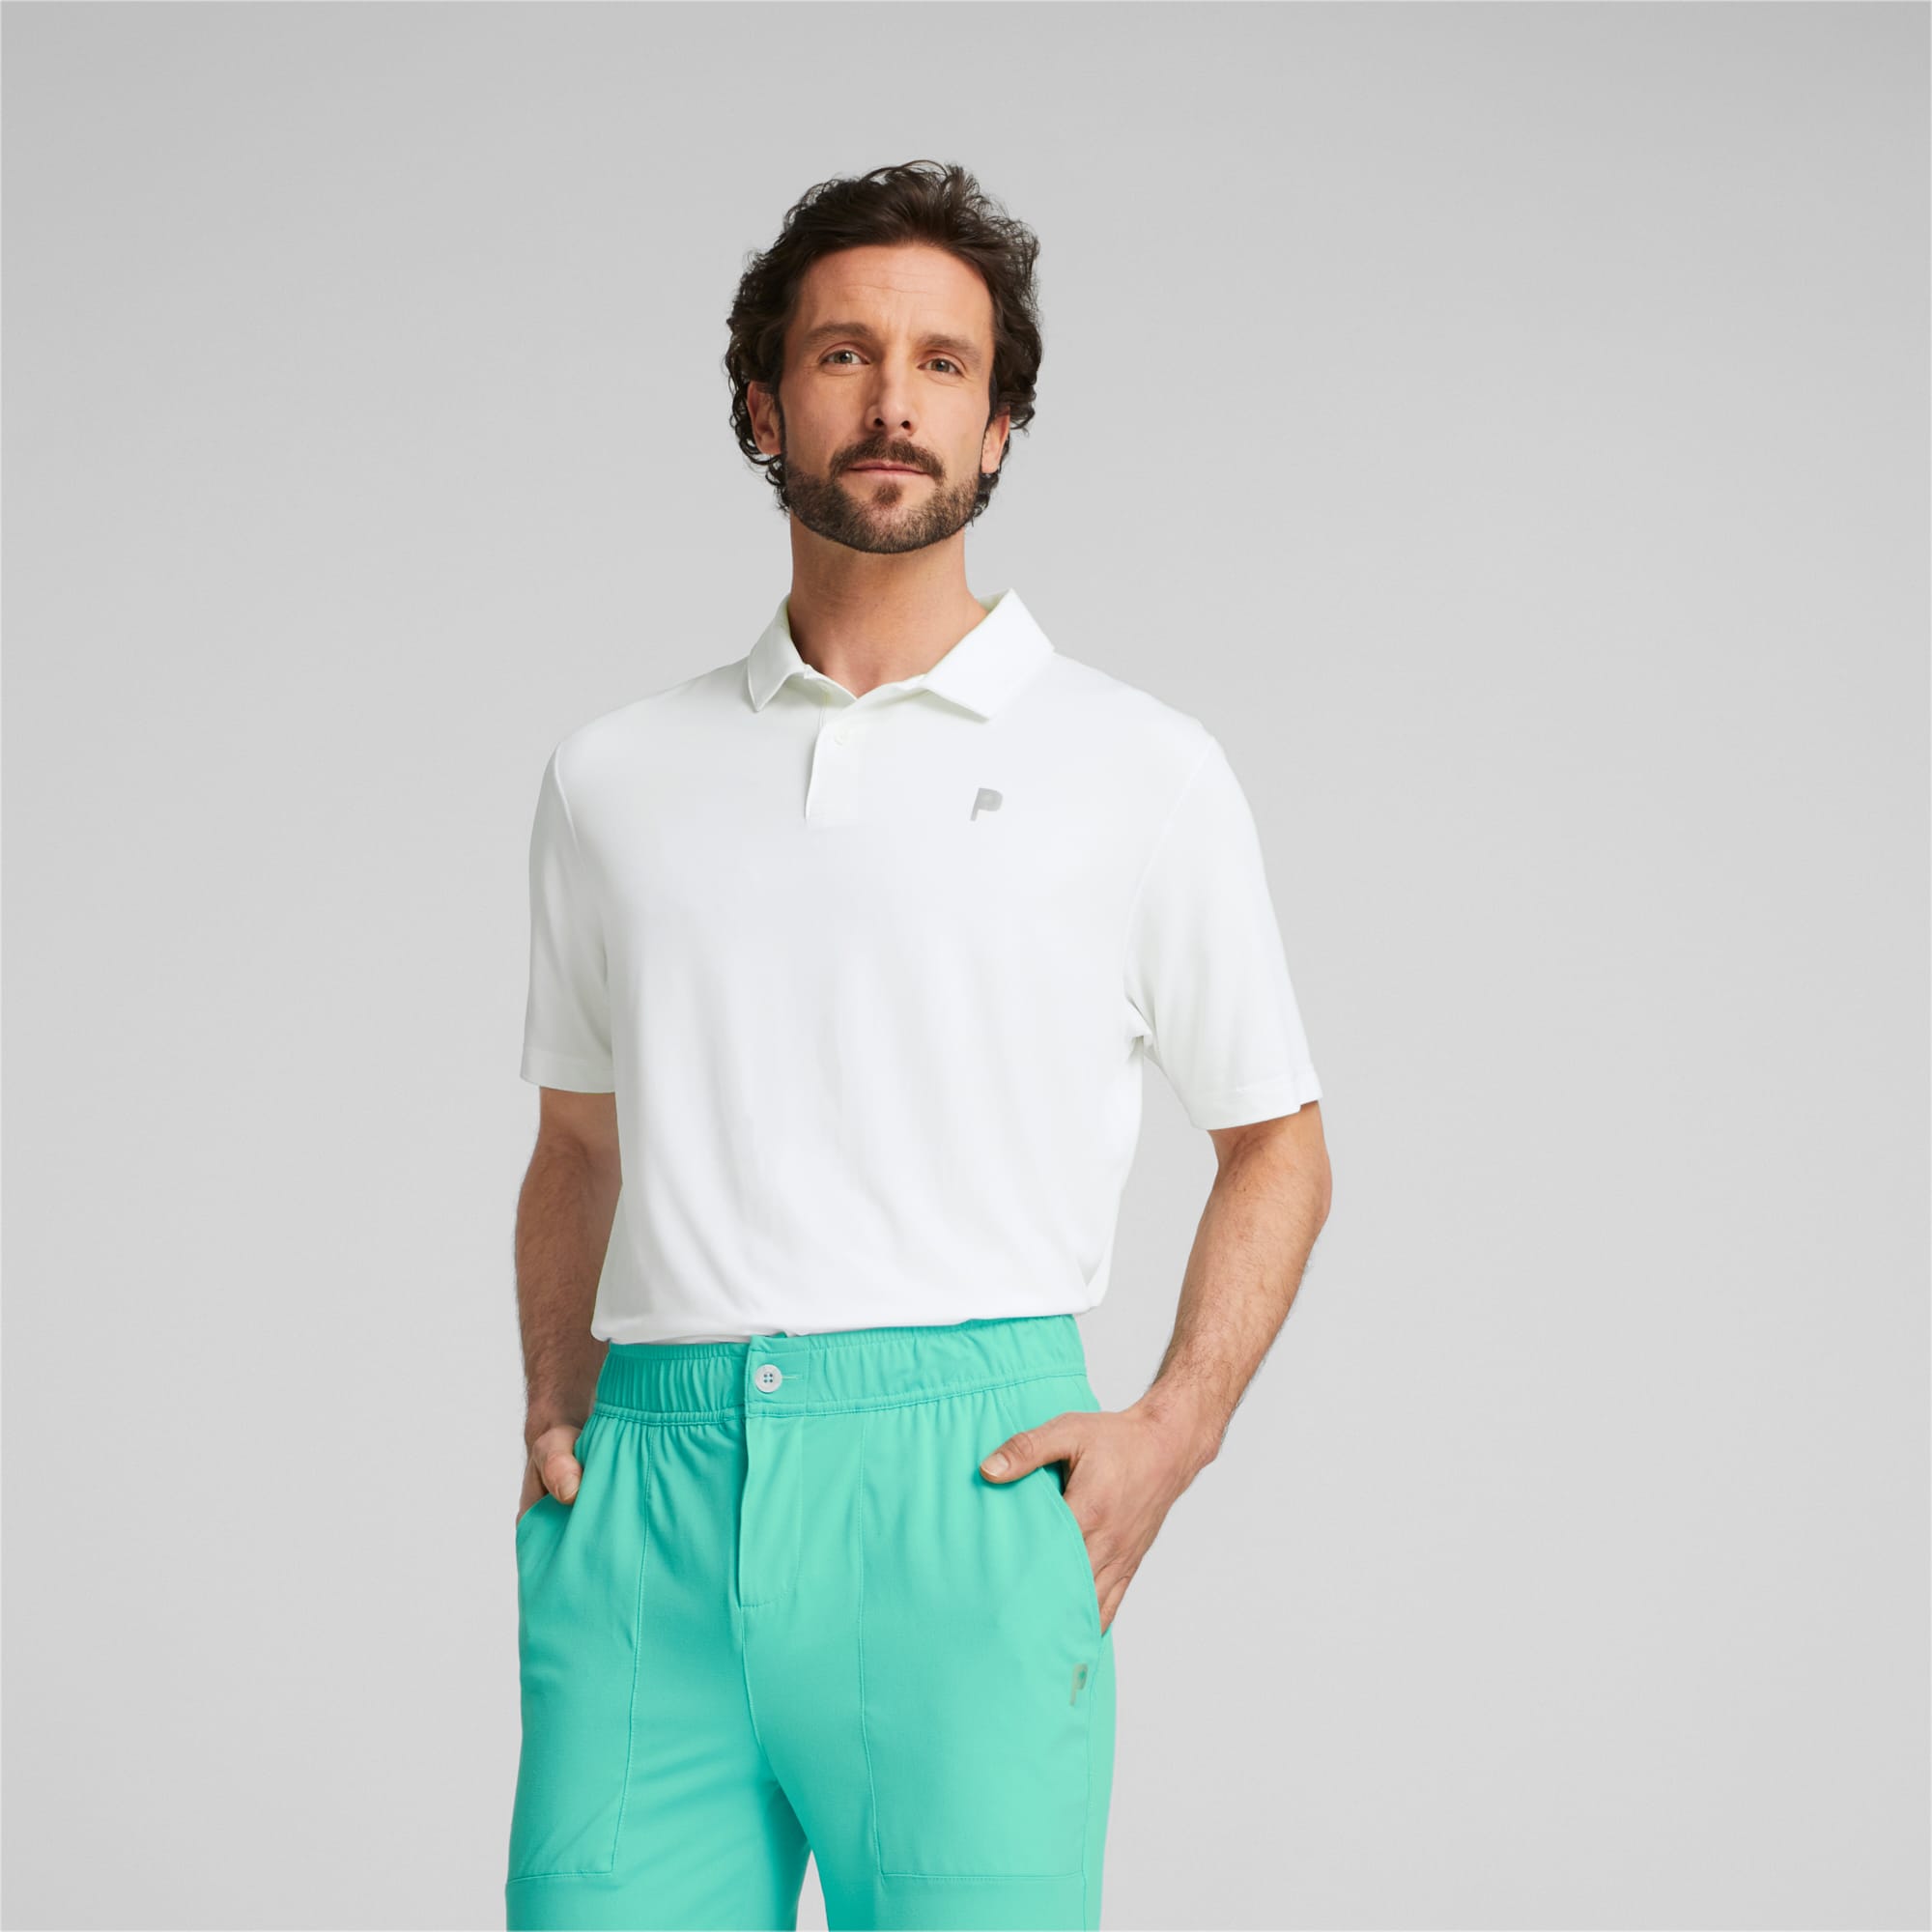 PUMA x Palm Tree Crew Men's Golf Polo | Bright White | PUMA Shoes | PUMA